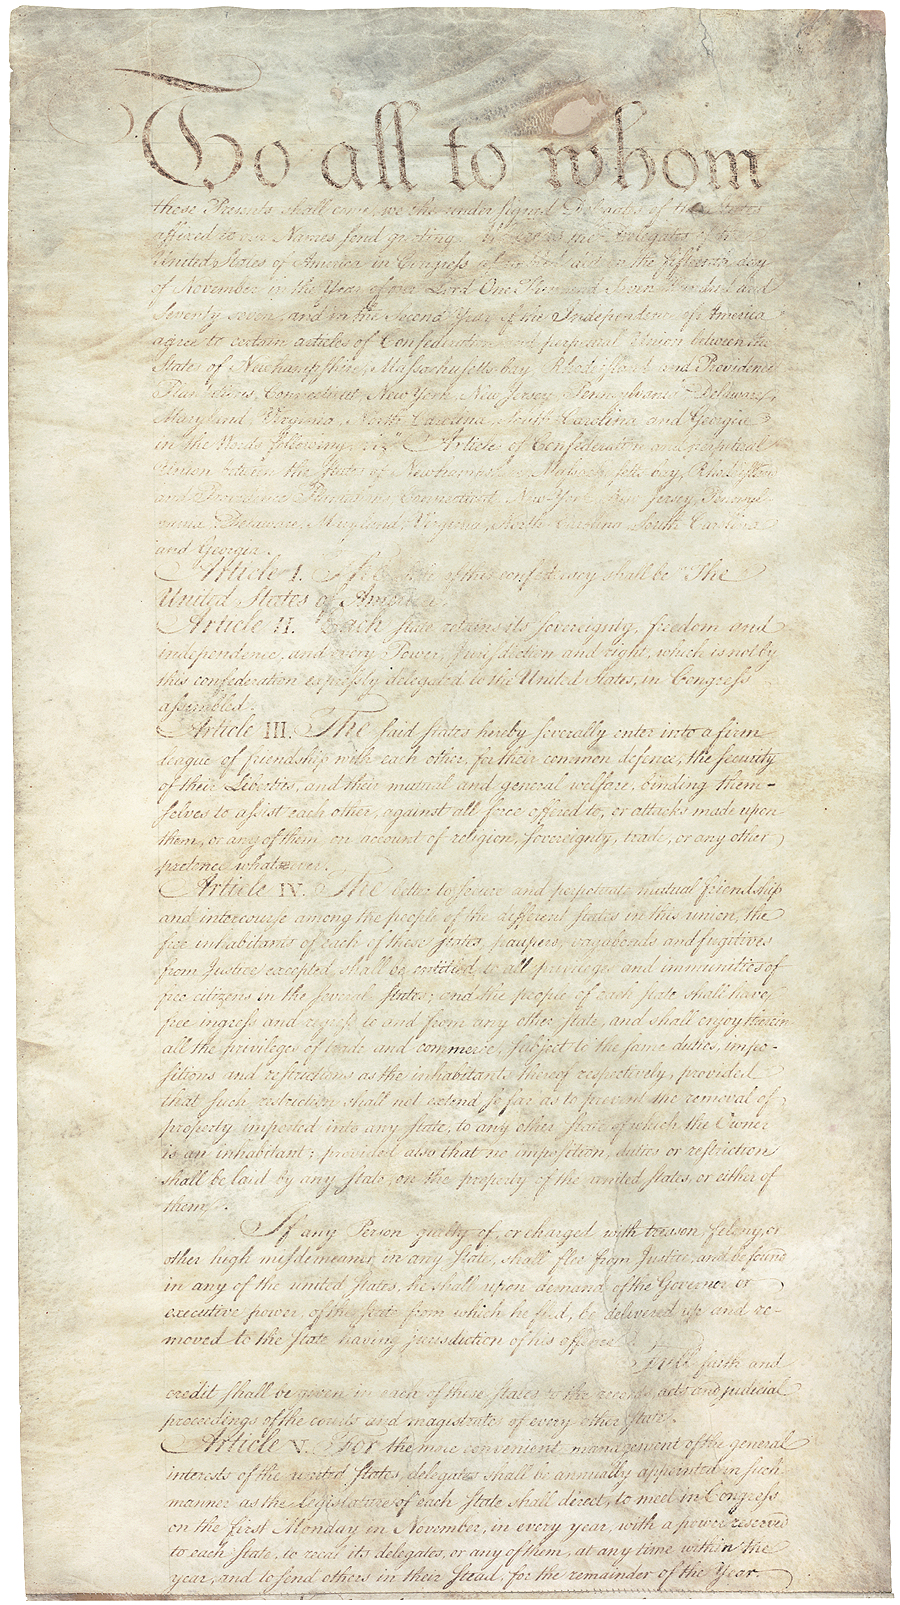 미국 연합규약

미국 최초의 헌법으로 1777년 11월 15일에 대륙회의에서 가결되었으며, 각 주는 주권ㆍ자유ㆍ독립을 보장 받고 연방정부의 권한은 국방 및 외교로 국한하는 내용.

